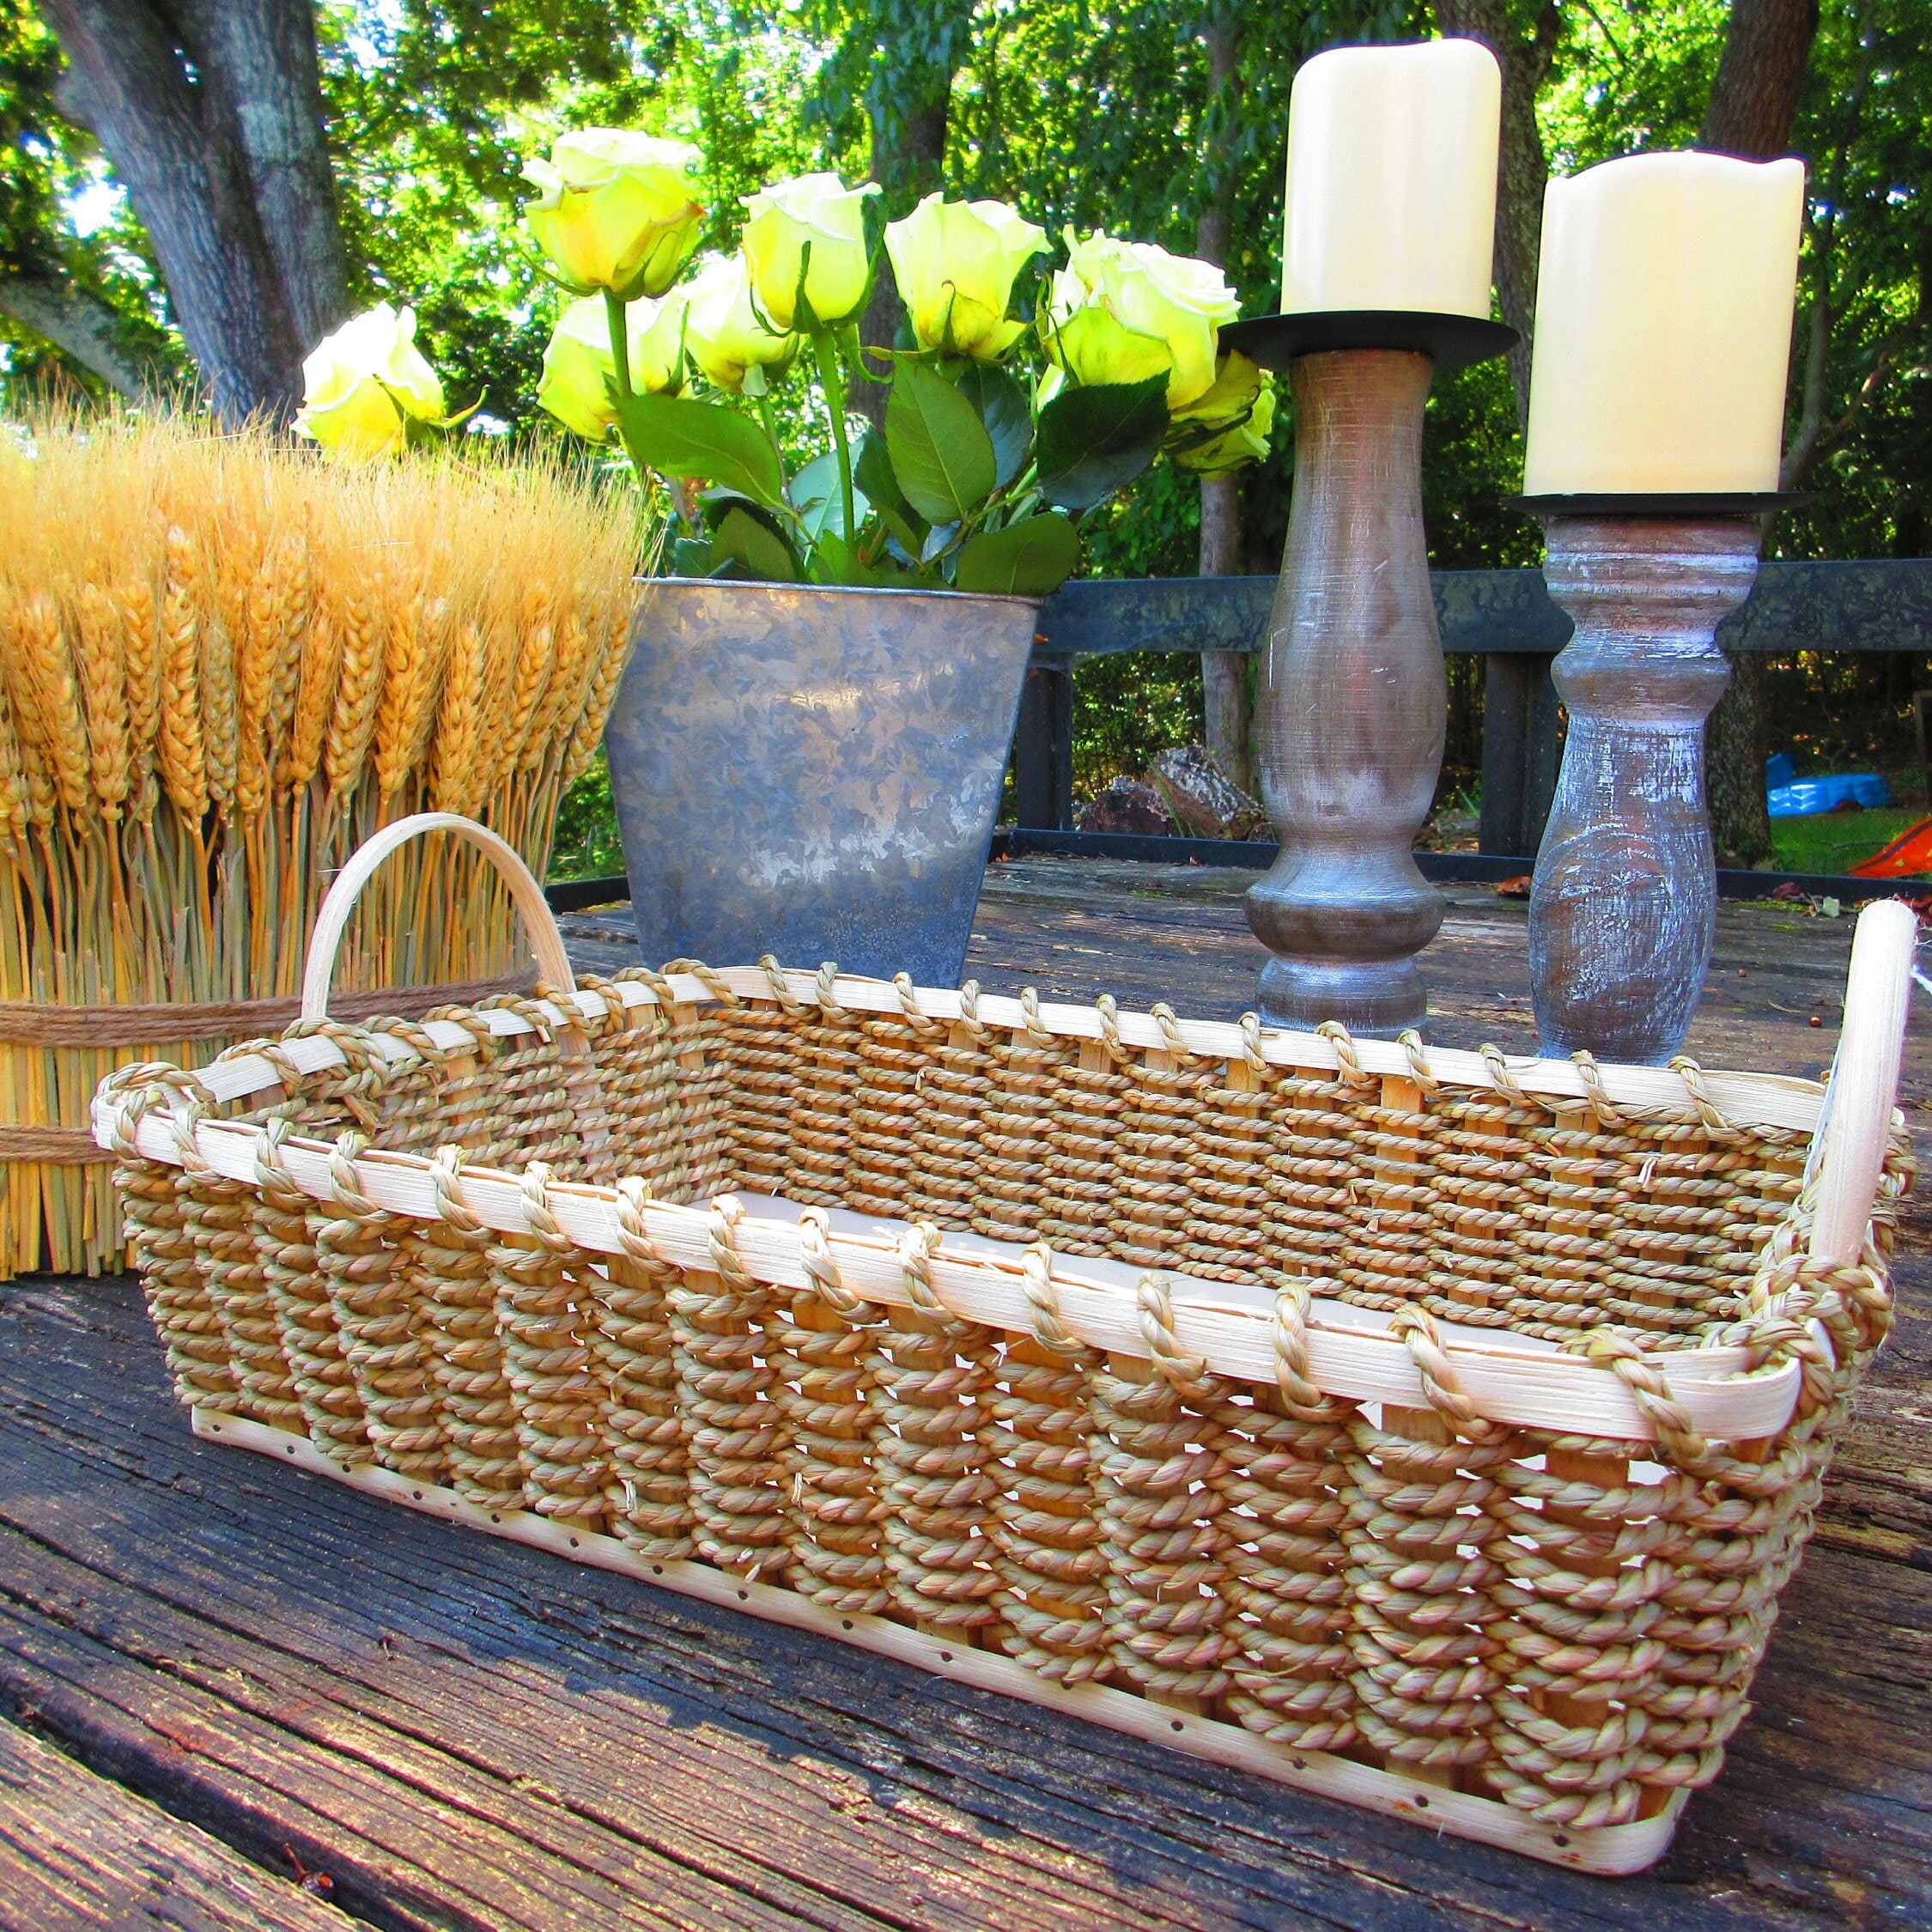 Kitchen Baskets  Amish Wicker Kitchen Storage & Serving Baskets — Amish  Baskets